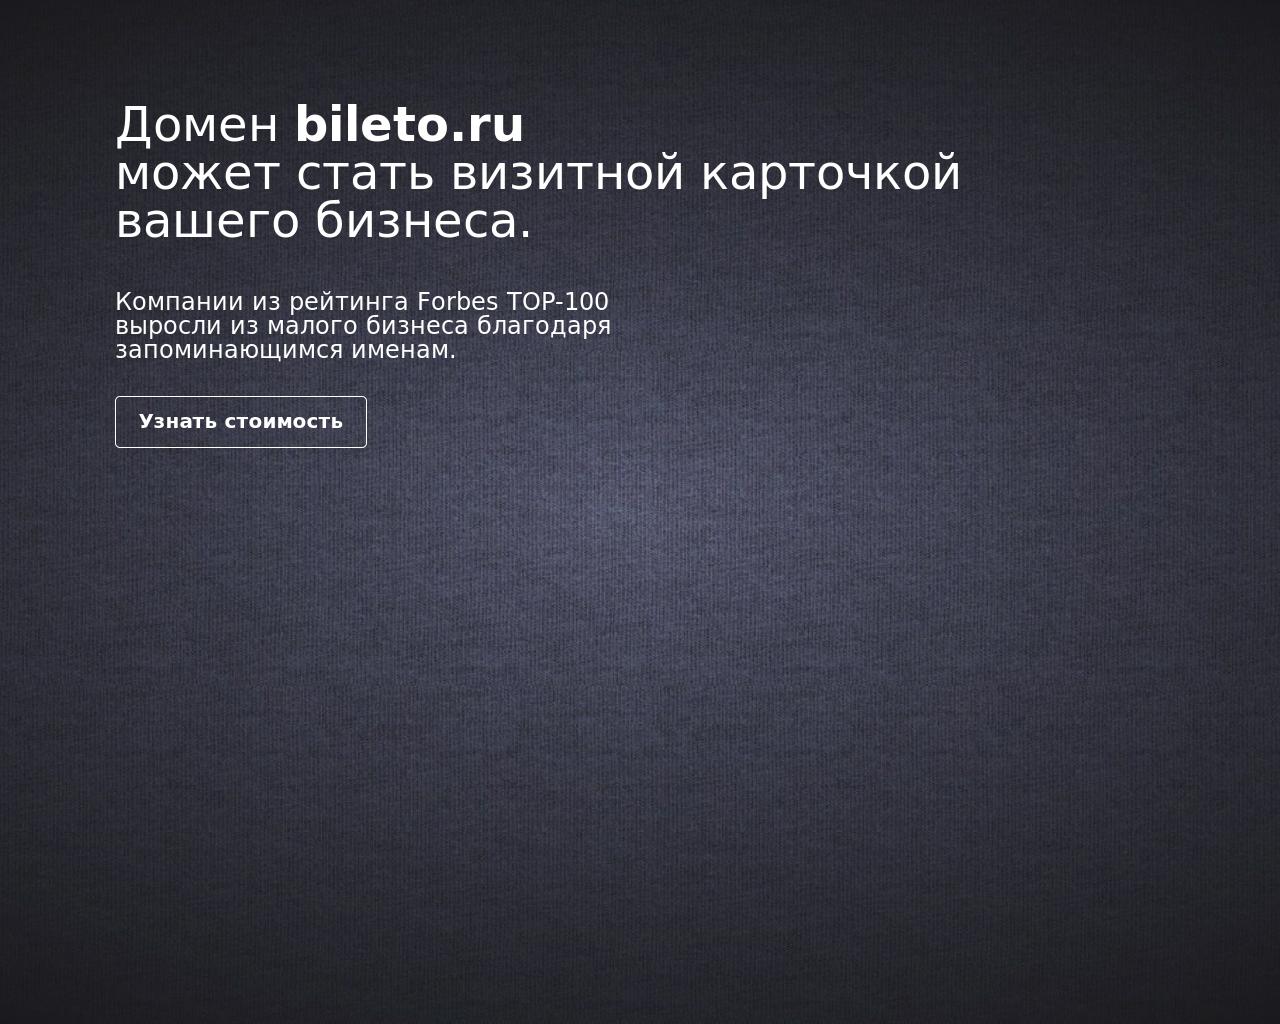 Изображение сайта bileto.ru в разрешении 1280x1024